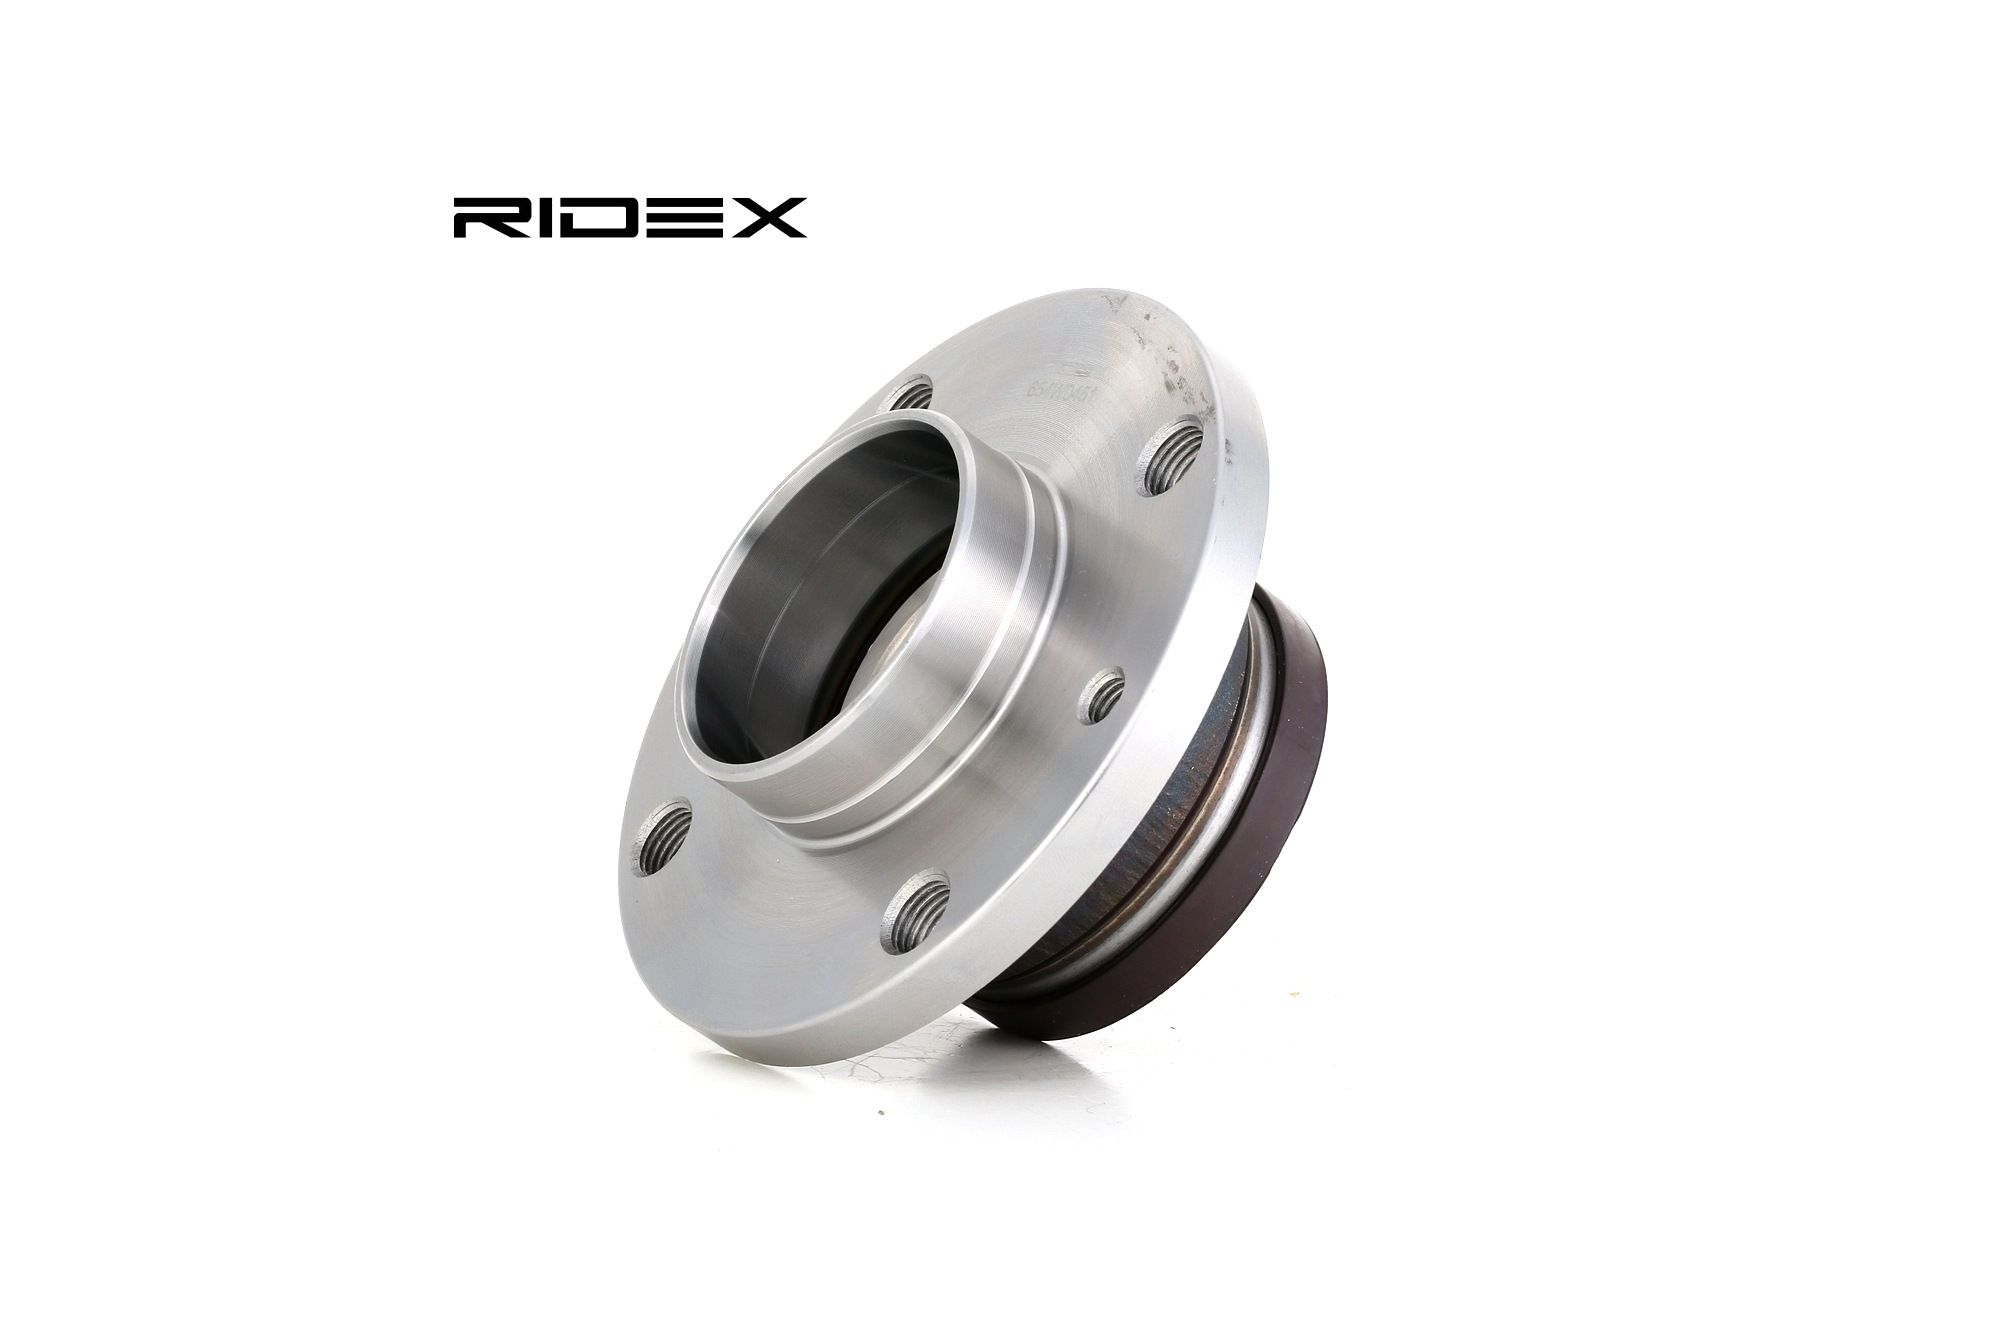 RIDEX 654W0451 Cuscinetto ruota con anello sensore magnetico integrato, 117 mm